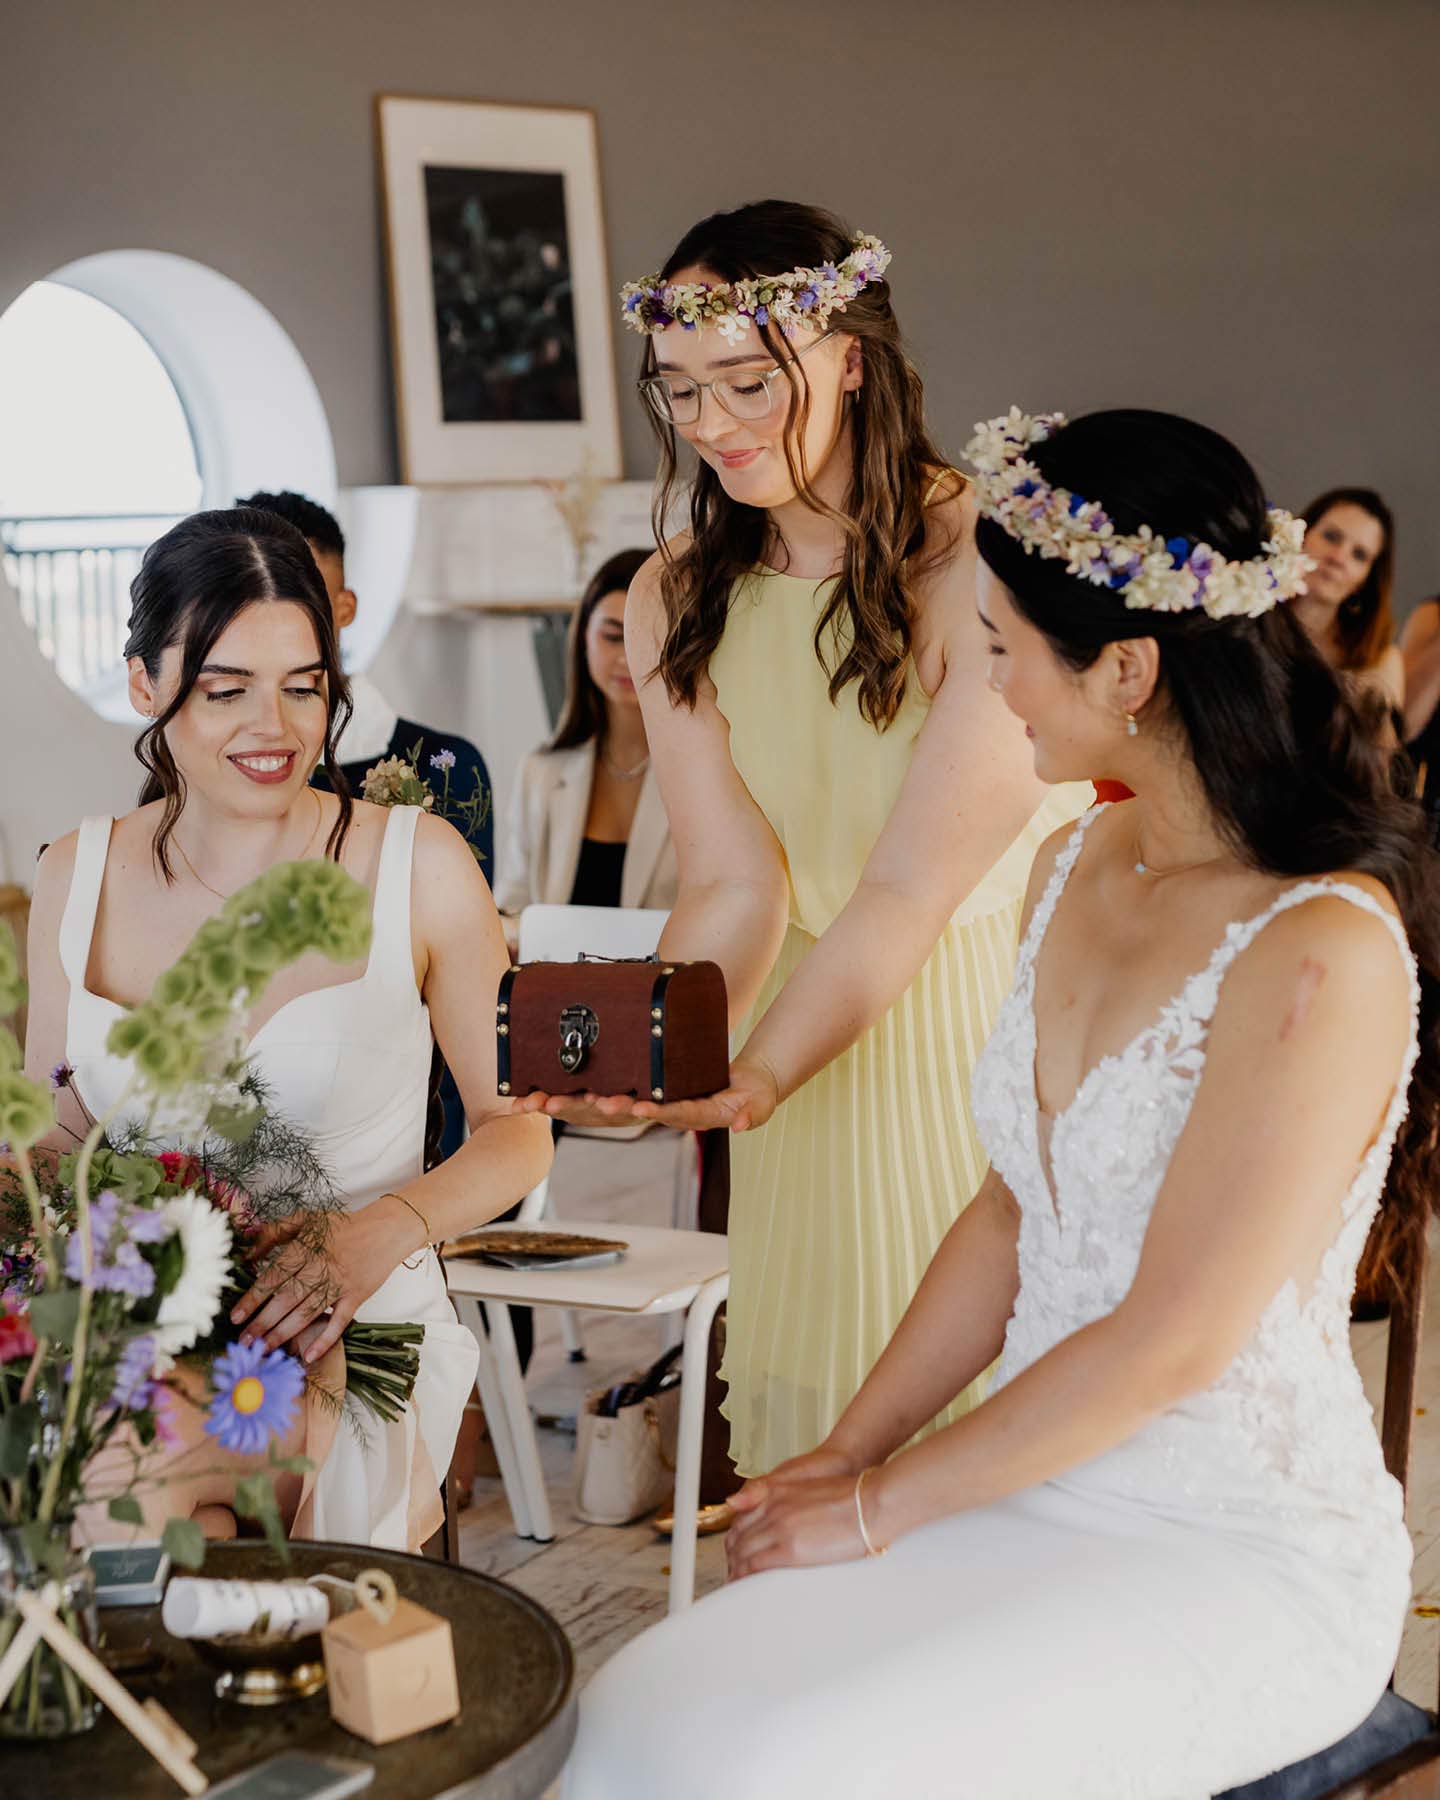 Trauzeugin bringt Eheringe in Holzschatulle zum Hochzeitspaar